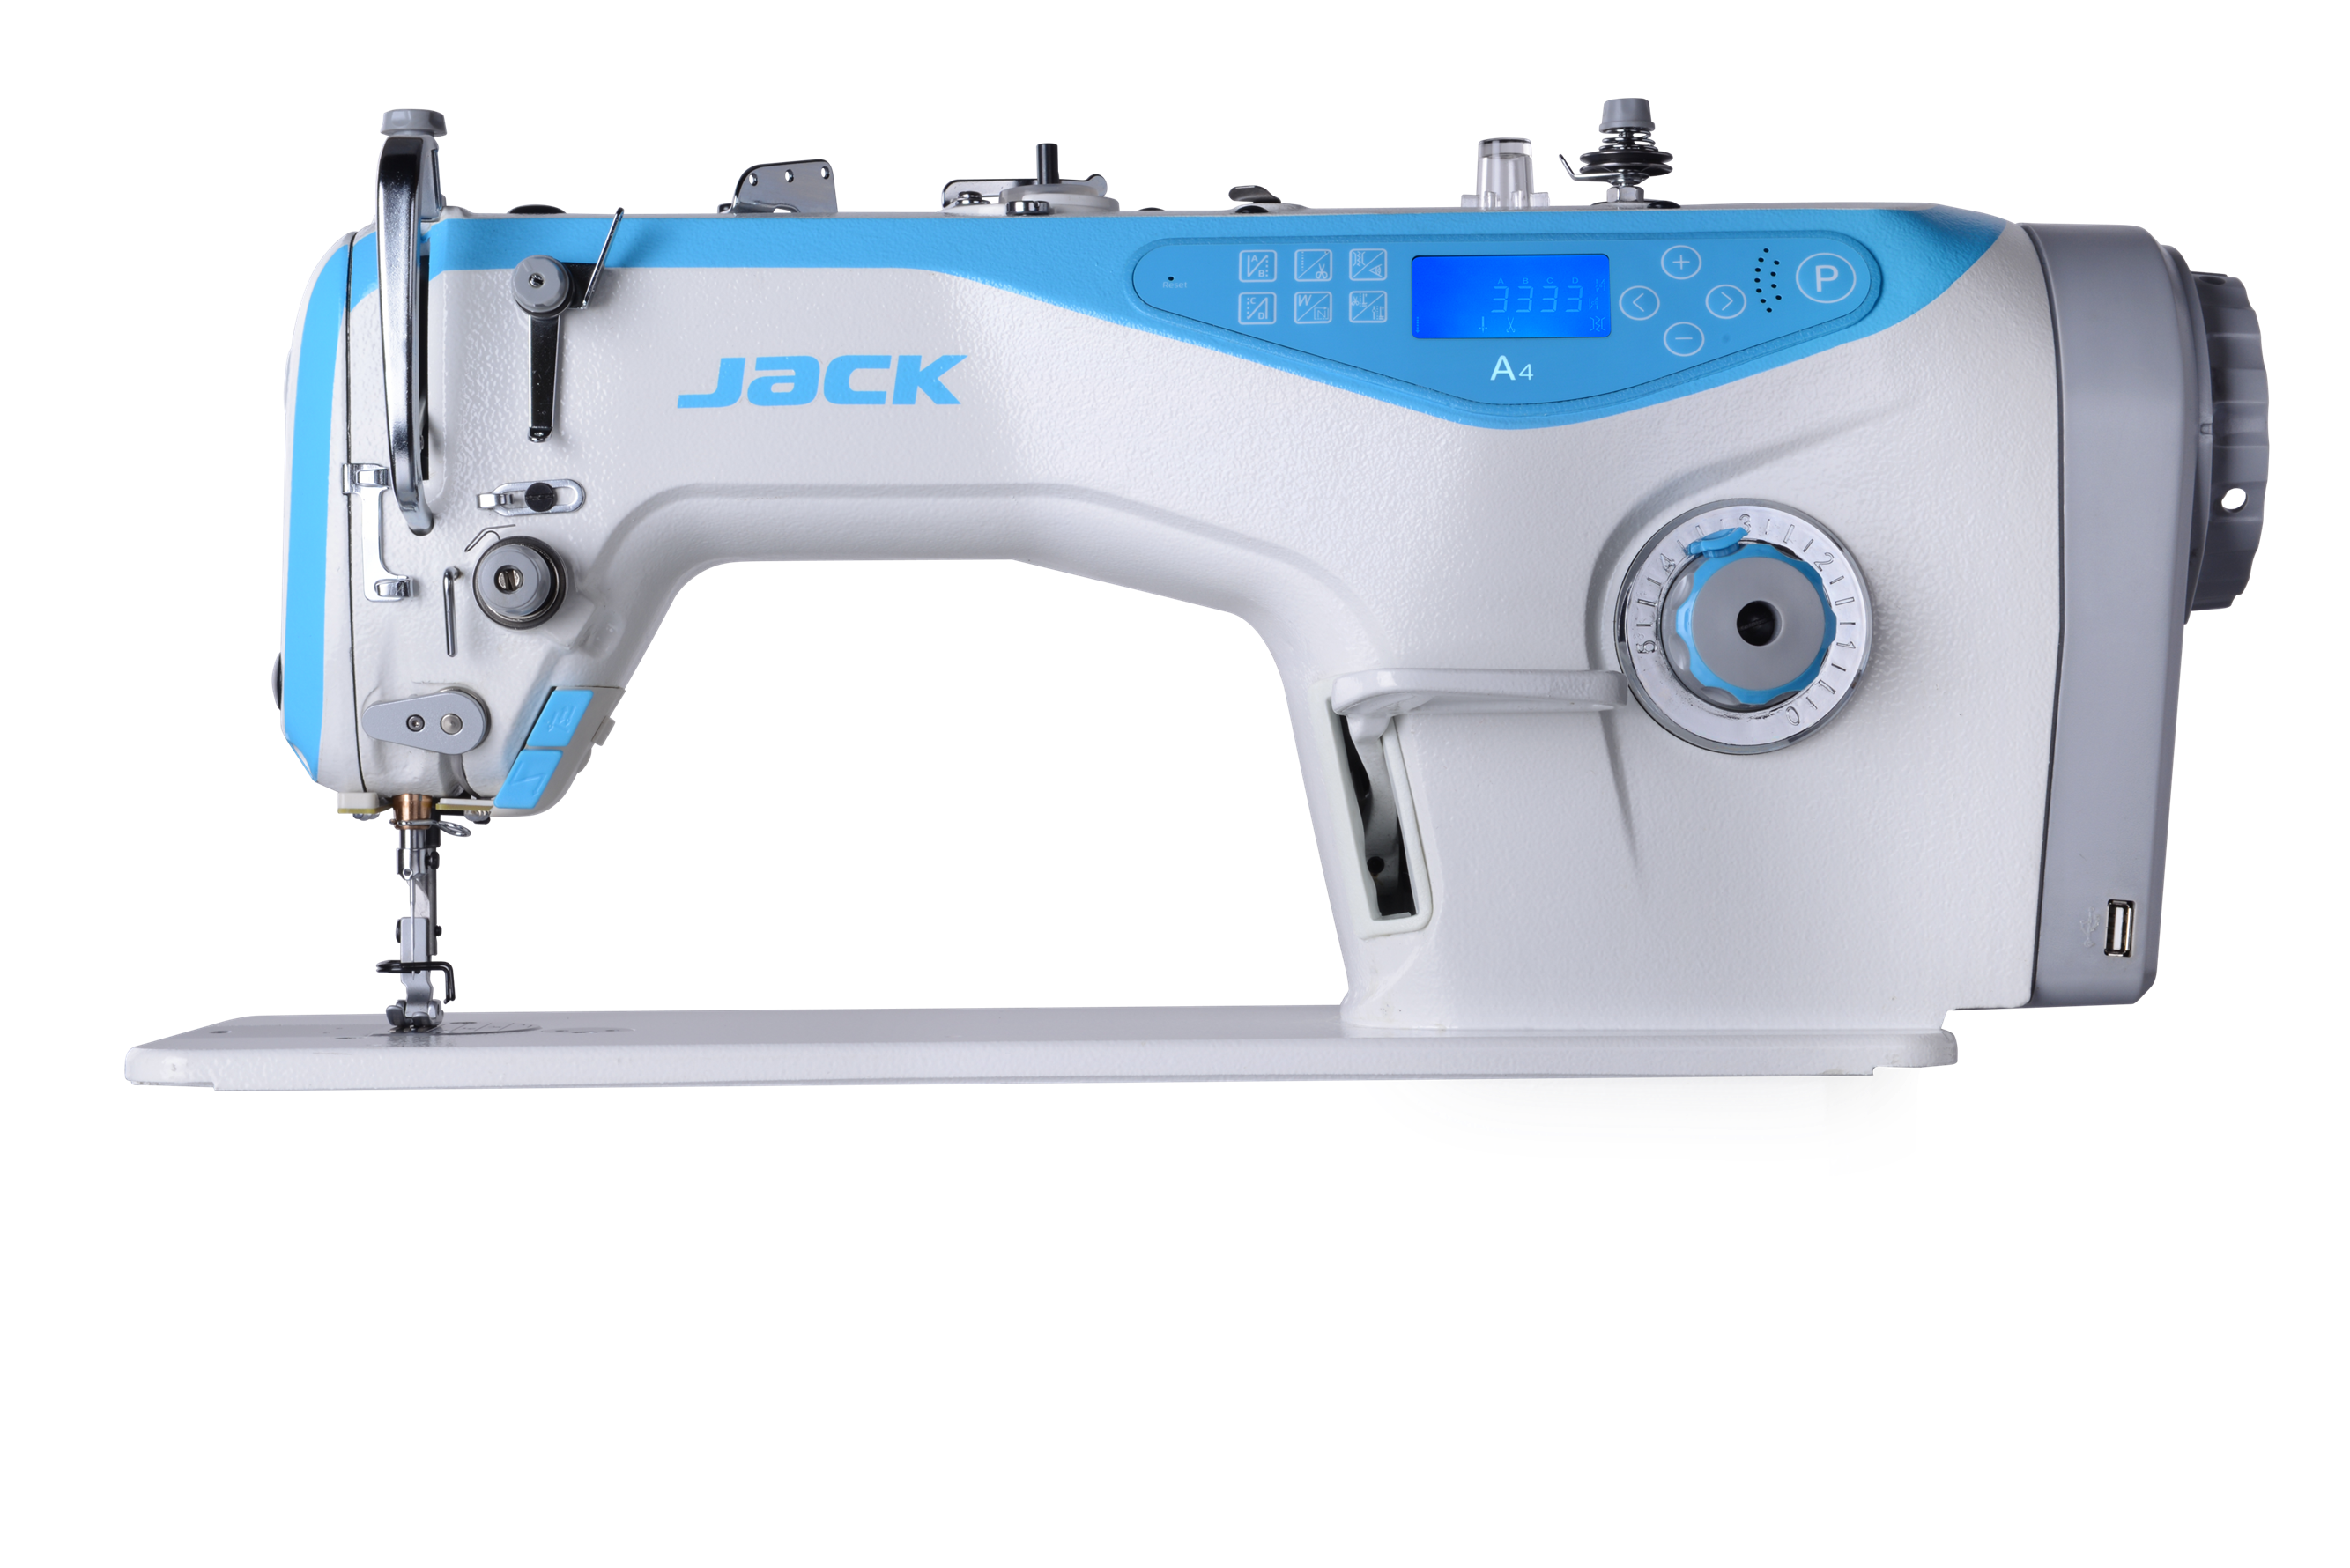 Швейная машинка 5522. Jack JK-5559g-w. Jack f4 швейная машина. Промышленная швейная машина Jack JK-a5e-a. JK-5559g-w.